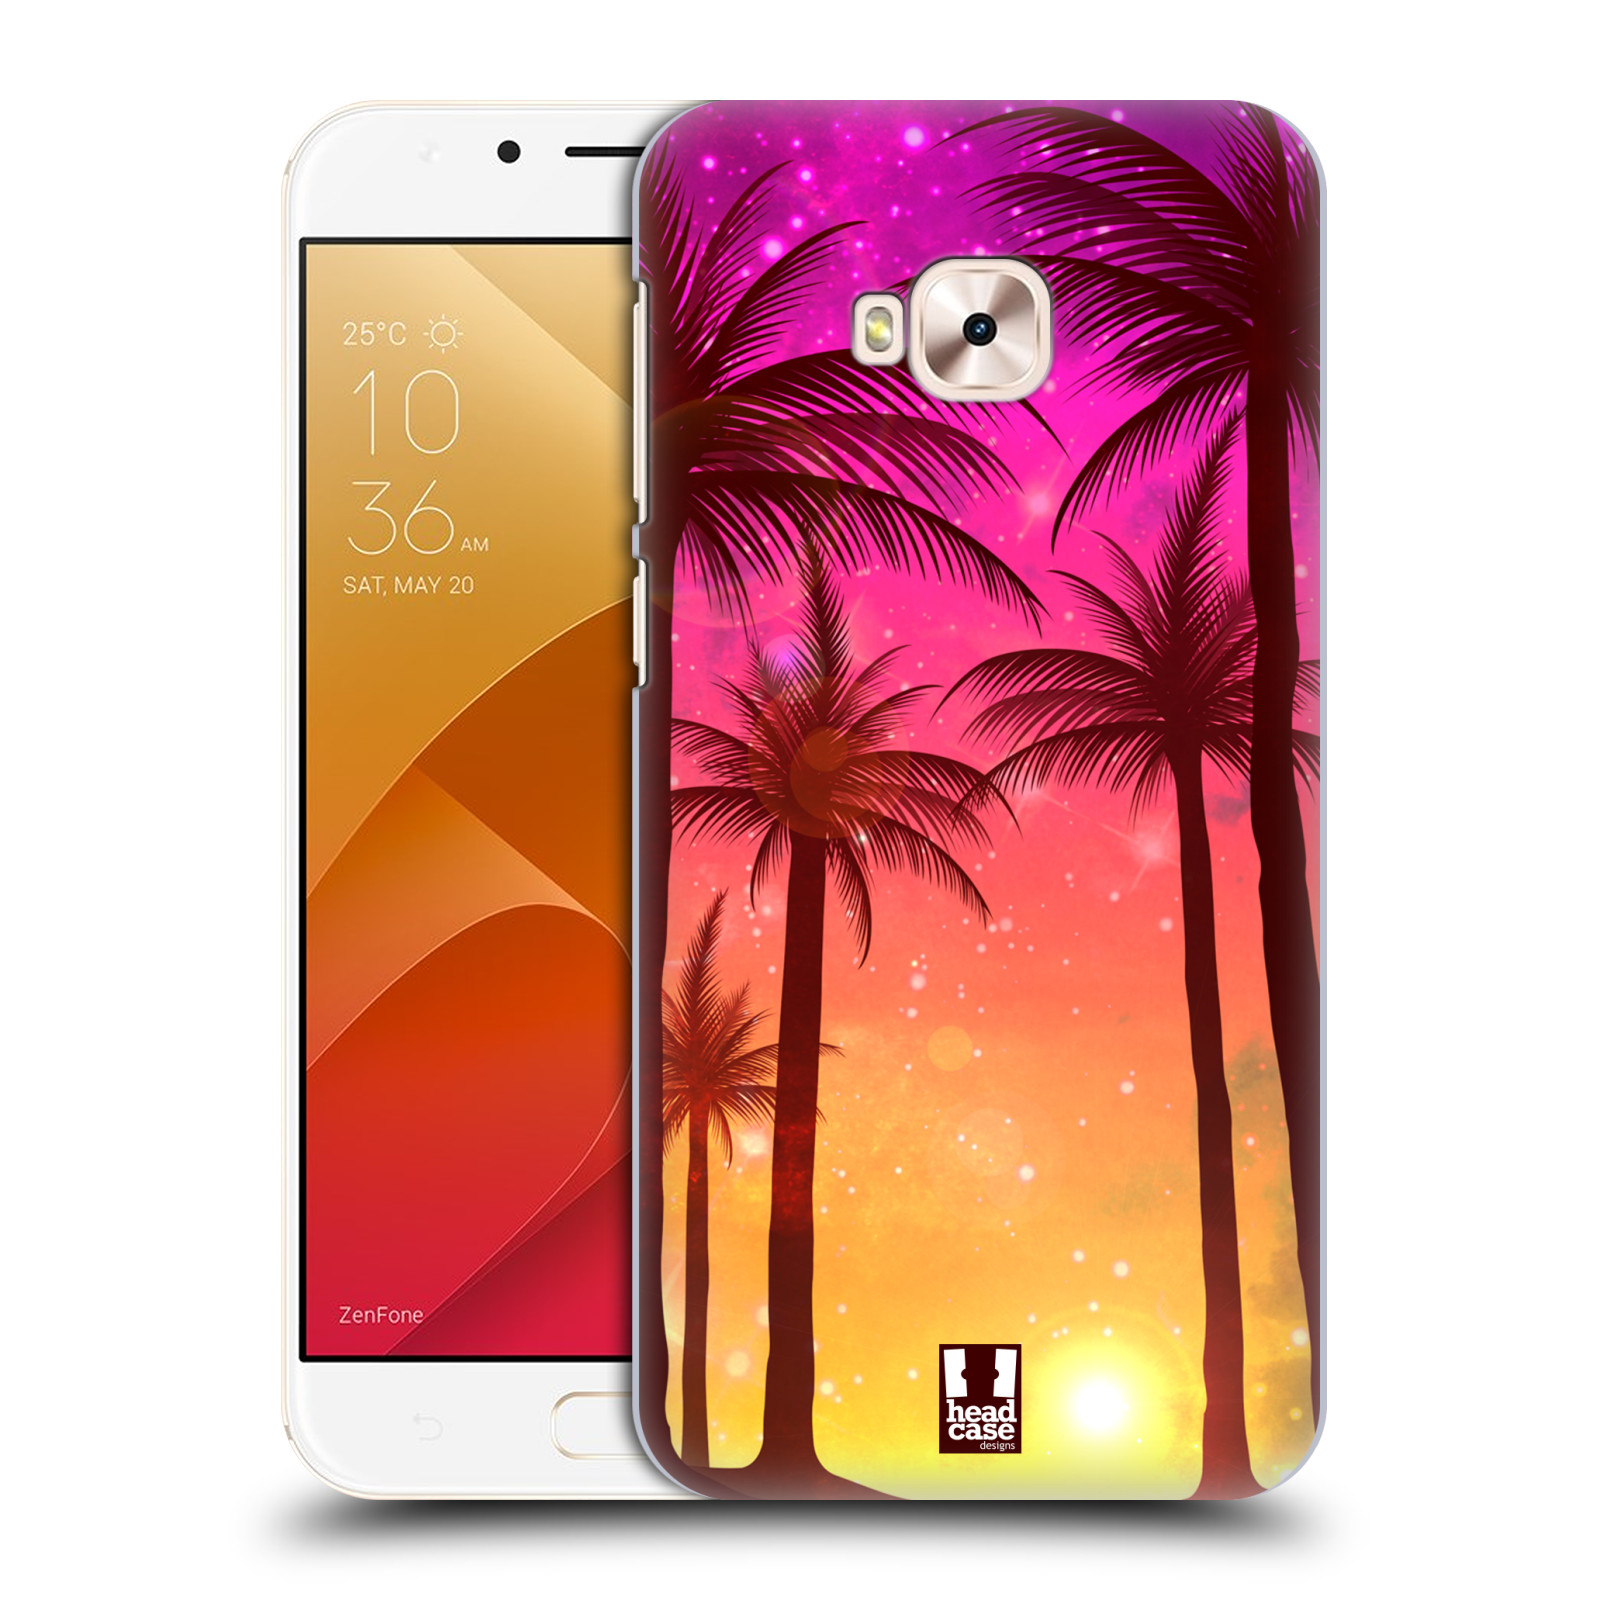 HEAD CASE plastový obal na mobil Asus Zenfone 4 Selfie Pro ZD552KL vzor Kreslený motiv silueta moře a palmy RŮŽOVÁ